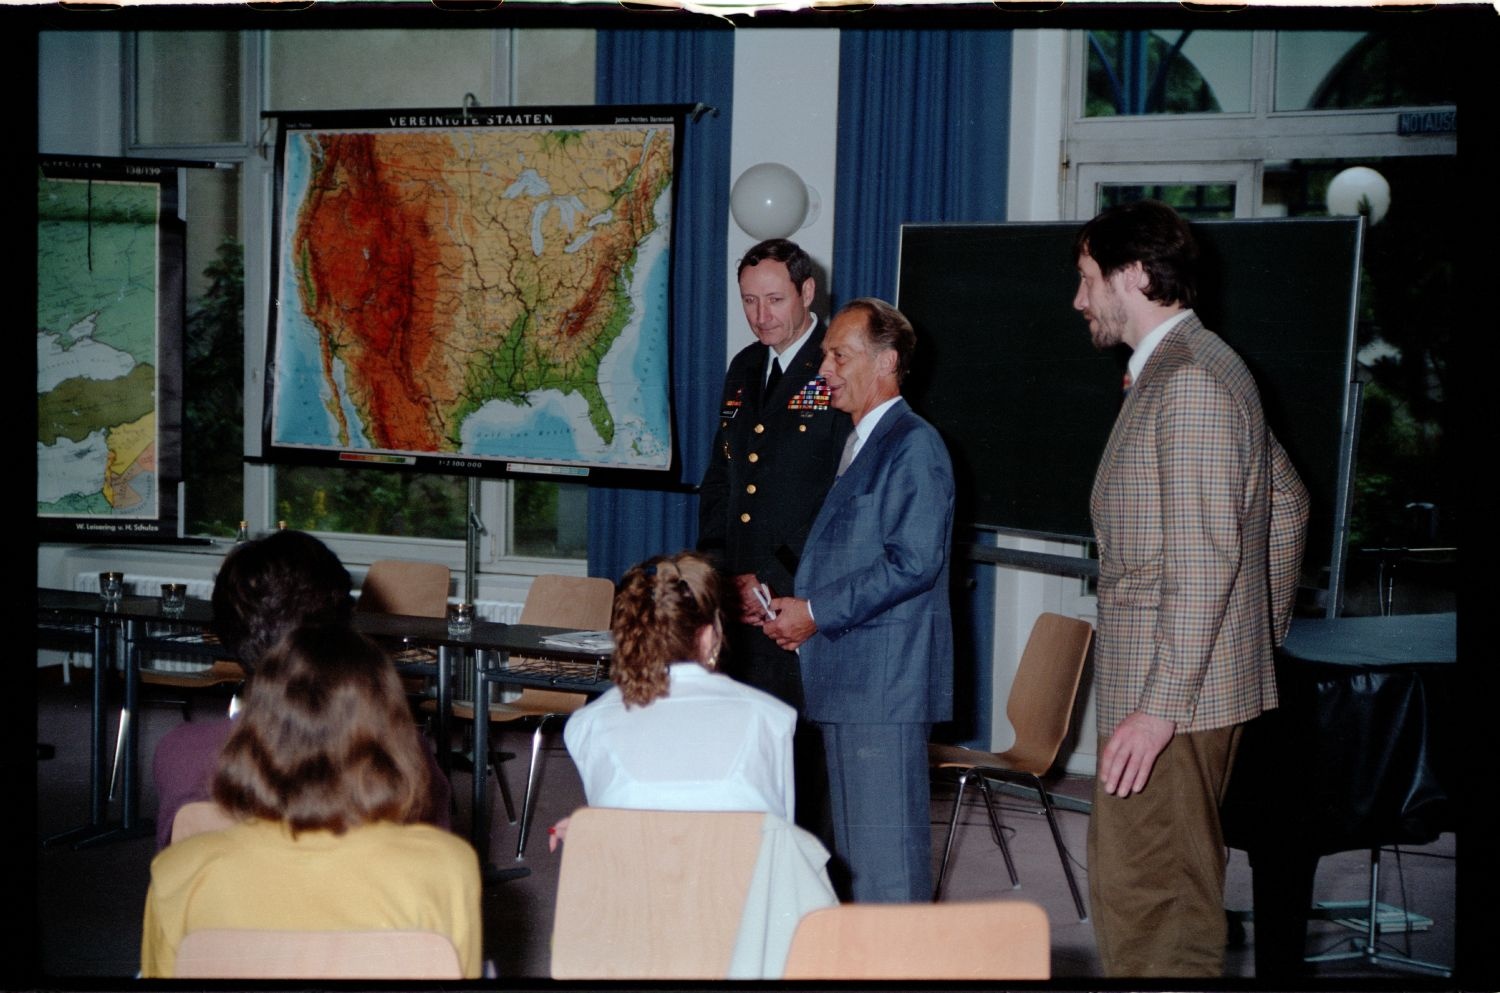 Fotografie: Besuch von US-Stadtkommandant Major General Raymond E. Haddock in einem Gymnasium in West-Berlin (AlliiertenMuseum/U.S. Army Photograph Public Domain Mark)